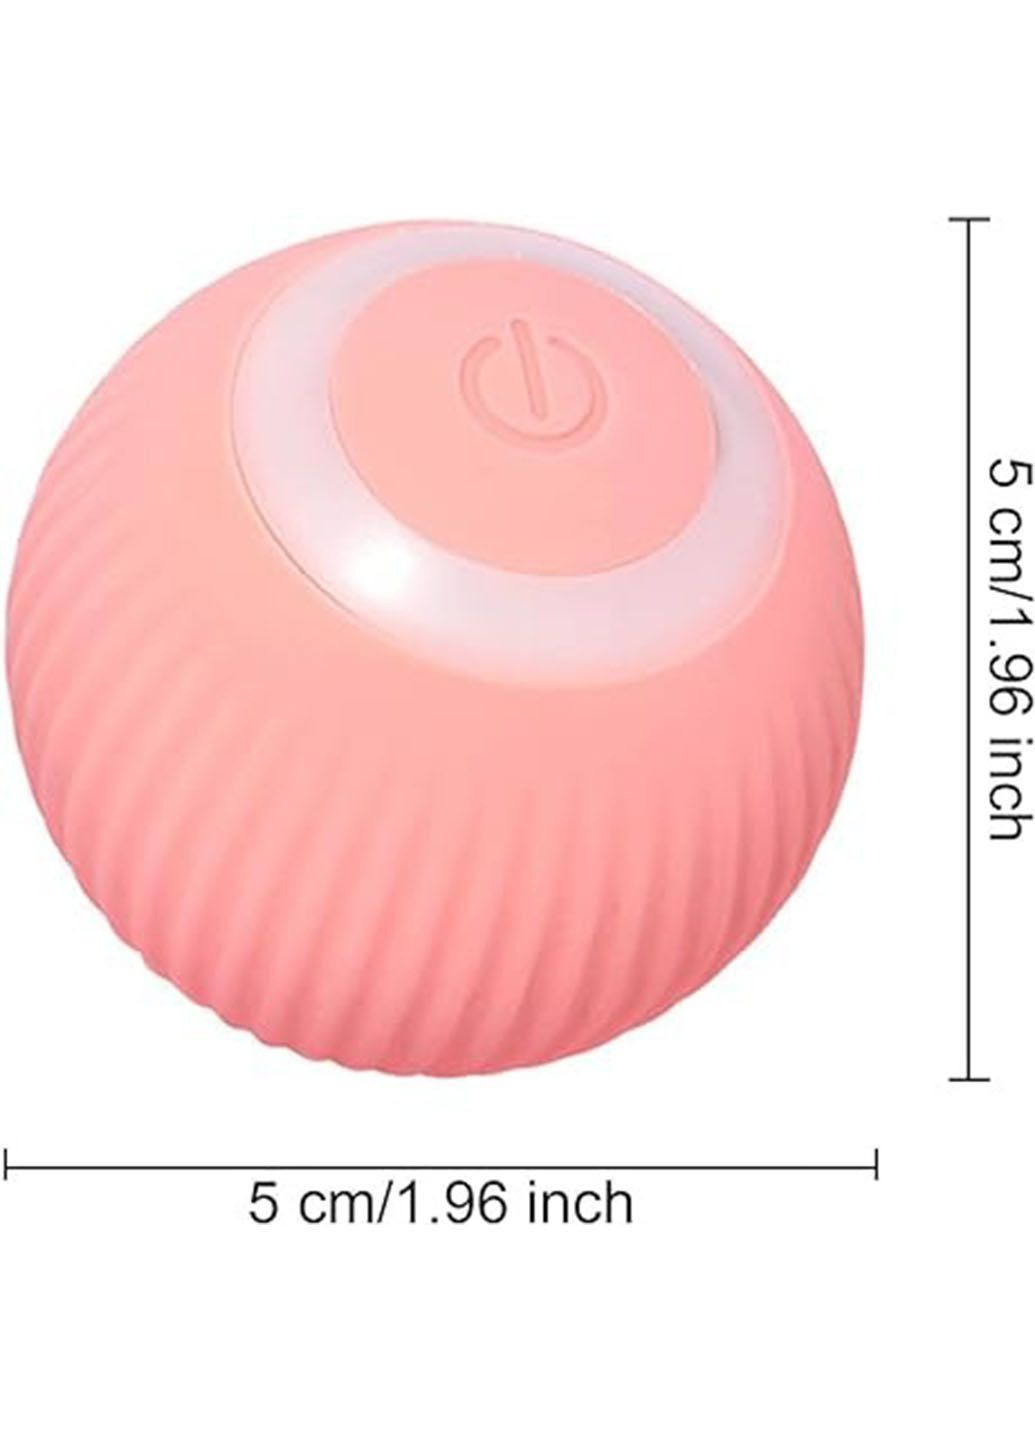 Інтерактивна іграшка м'ячик для тварин Pet Gravity з USB-зарядкою та підсвічуванням Good Idea rd-23 (290416618)